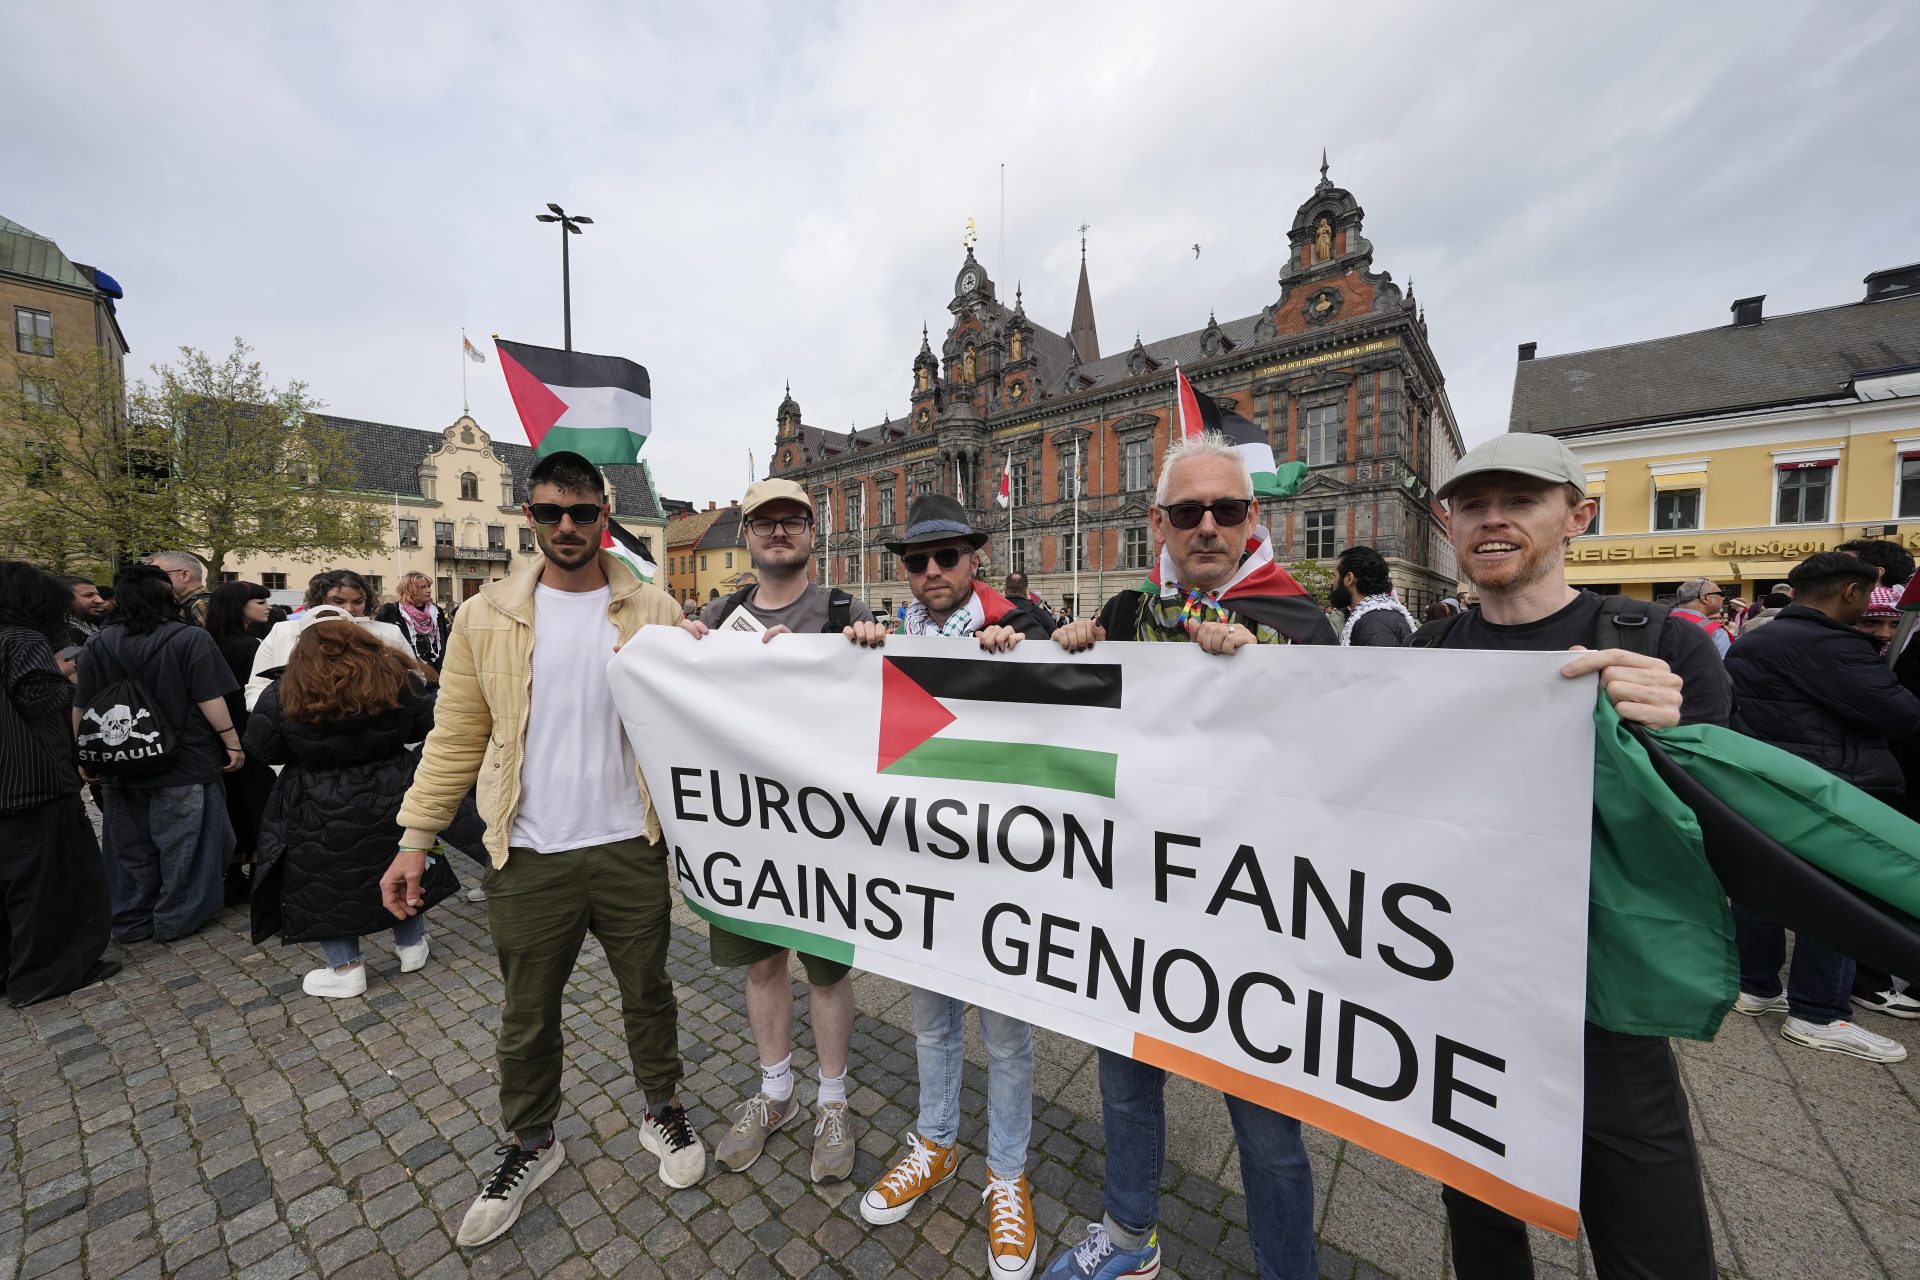 Le cri Palestine libre poursuit une chanteuse israélienne à l'Eurovision